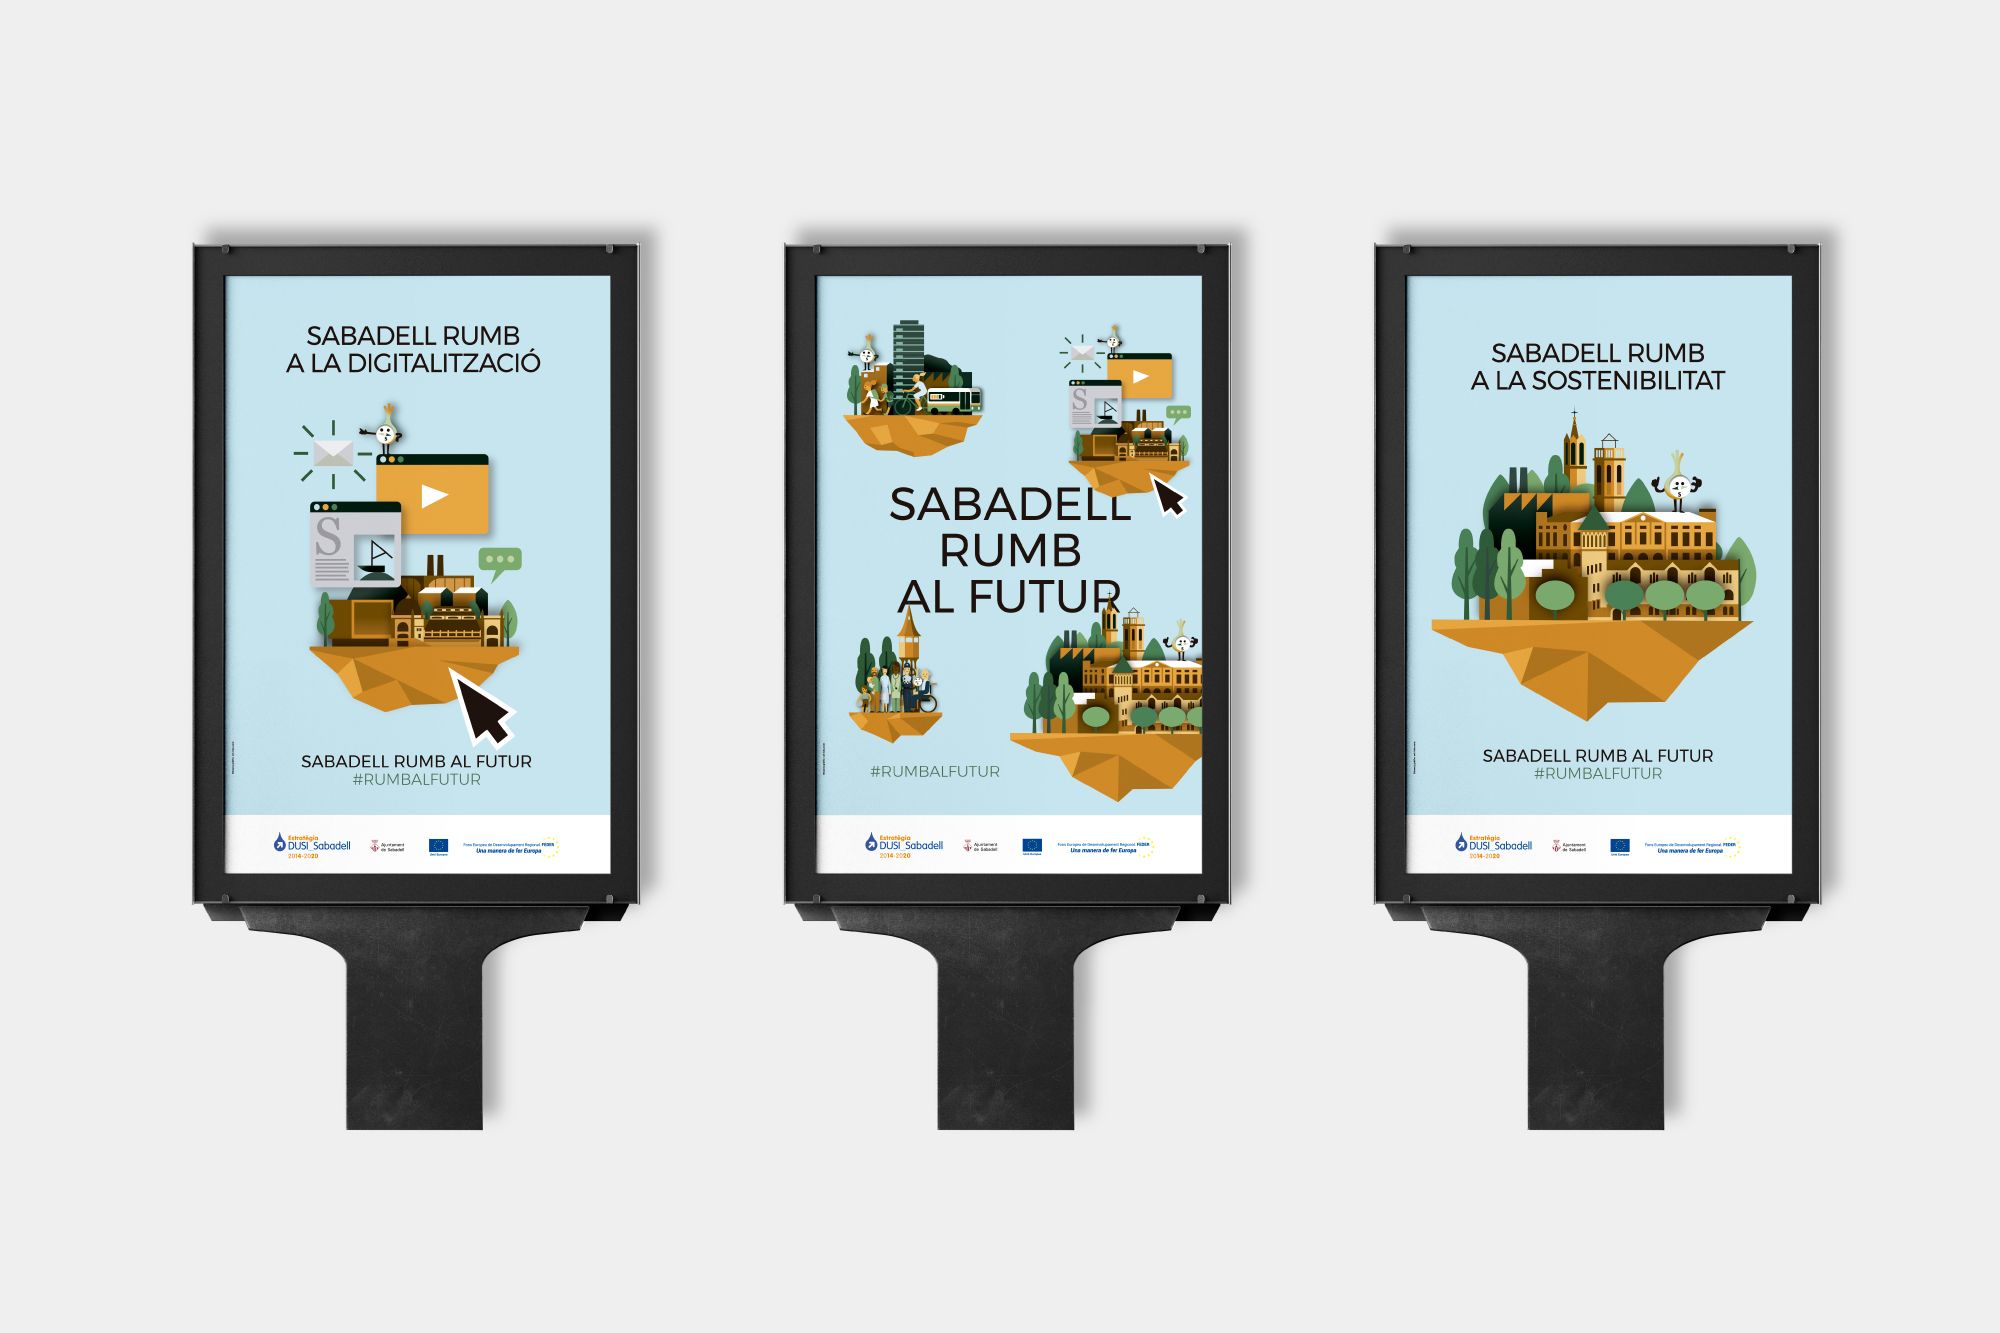 Campanya del ayuntamiento de Sabadell "Sabadell rumb al futur" , serie de cartles